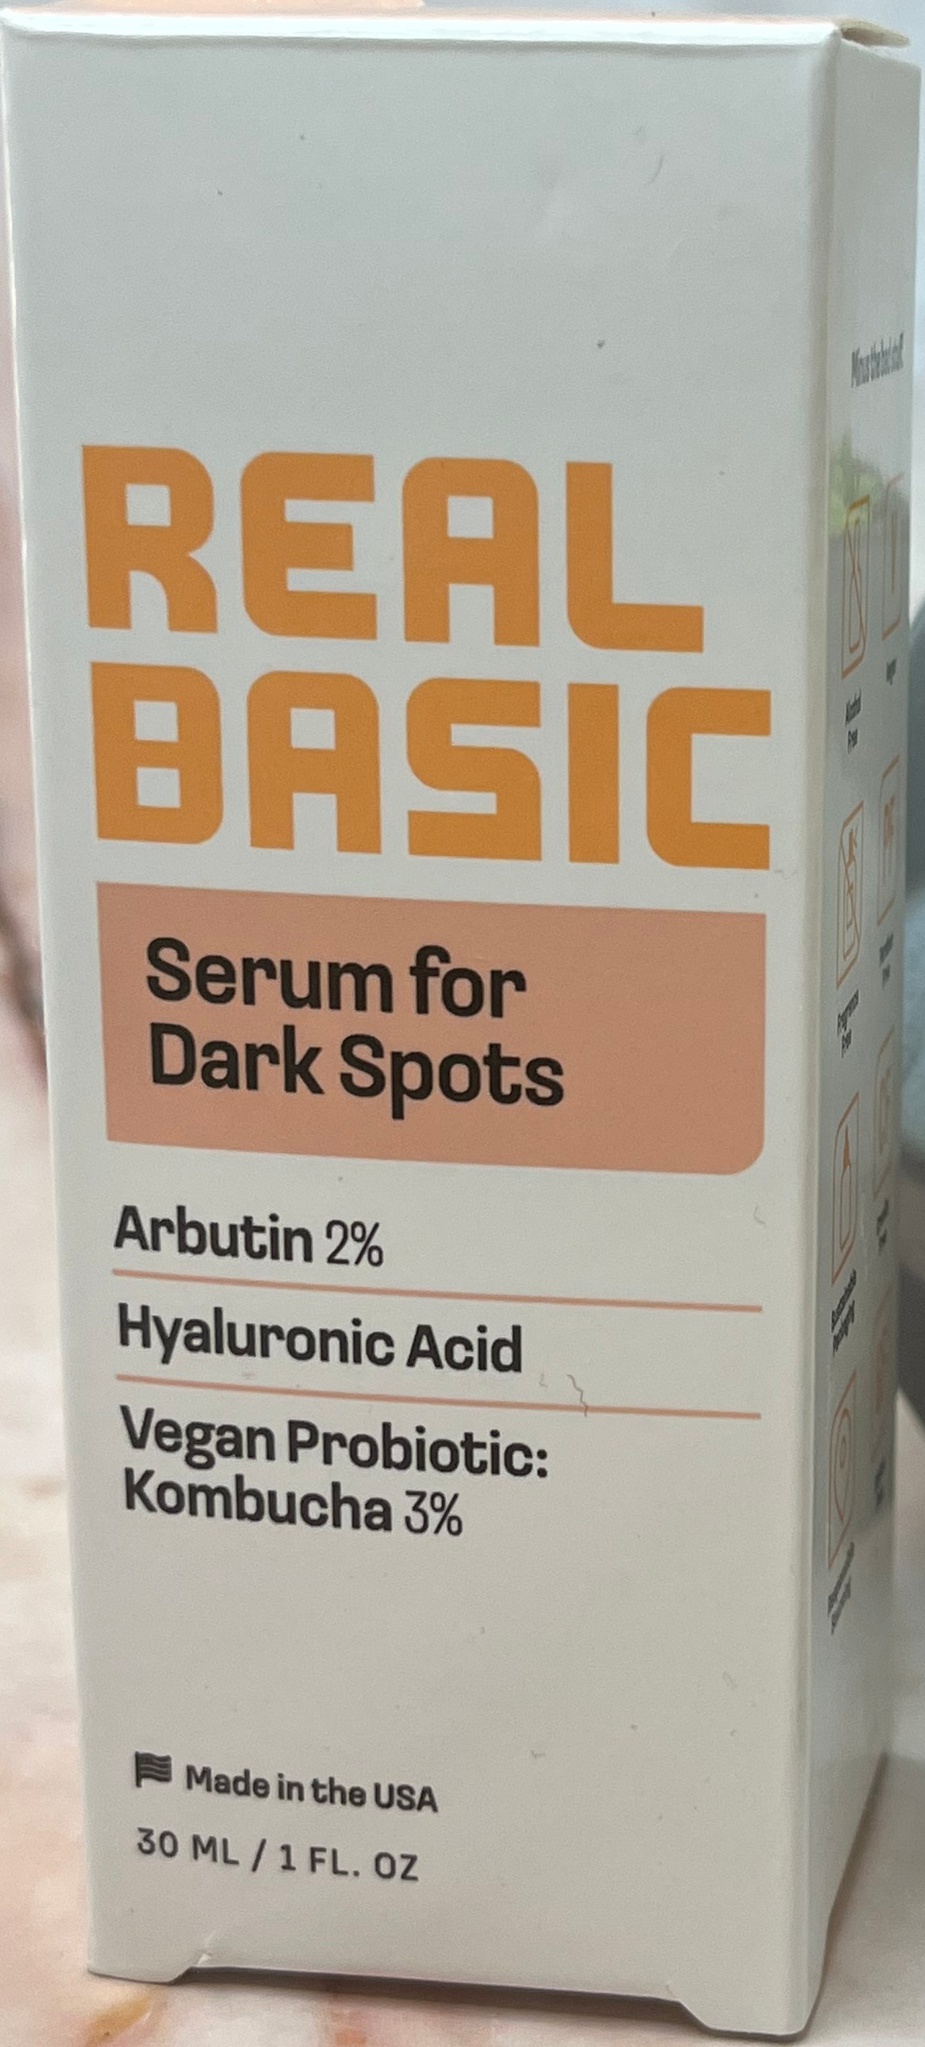 Real basic skincare Serum For Dark Spots